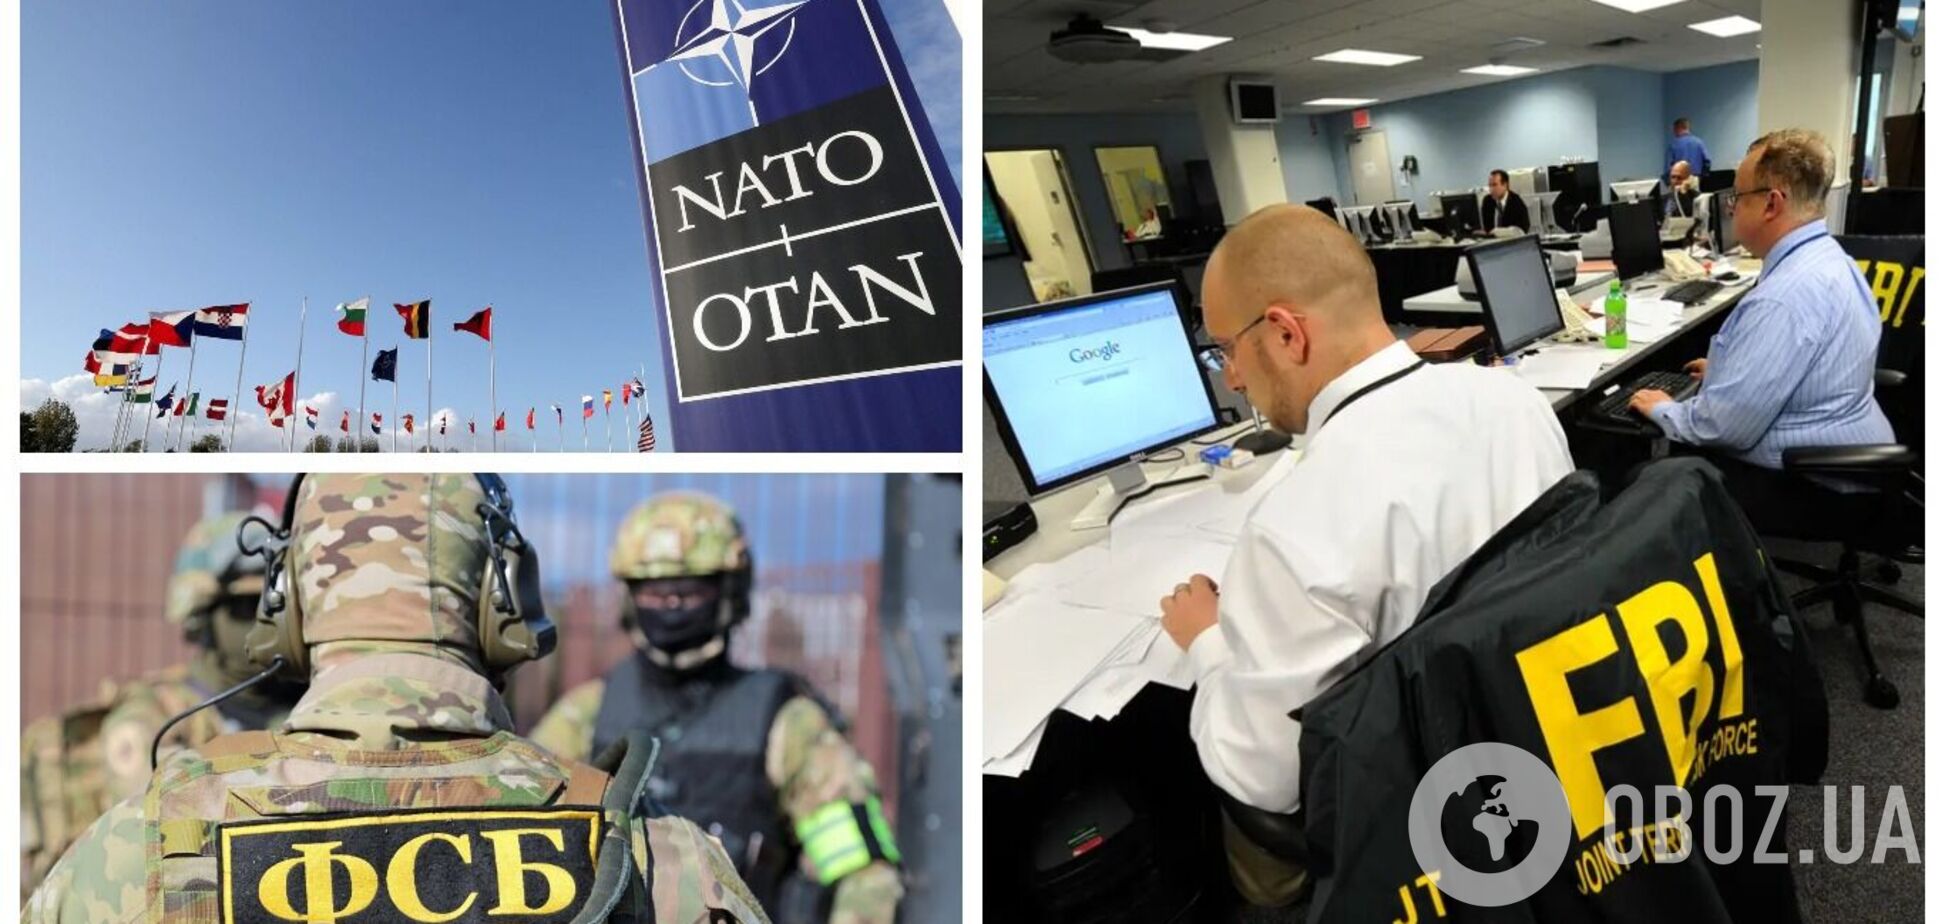 Под кодовым названием 'Змея': ФБР обнаружило шпионскую программу, которую РФ 20 лет использовала для похищения документов стран НАТО